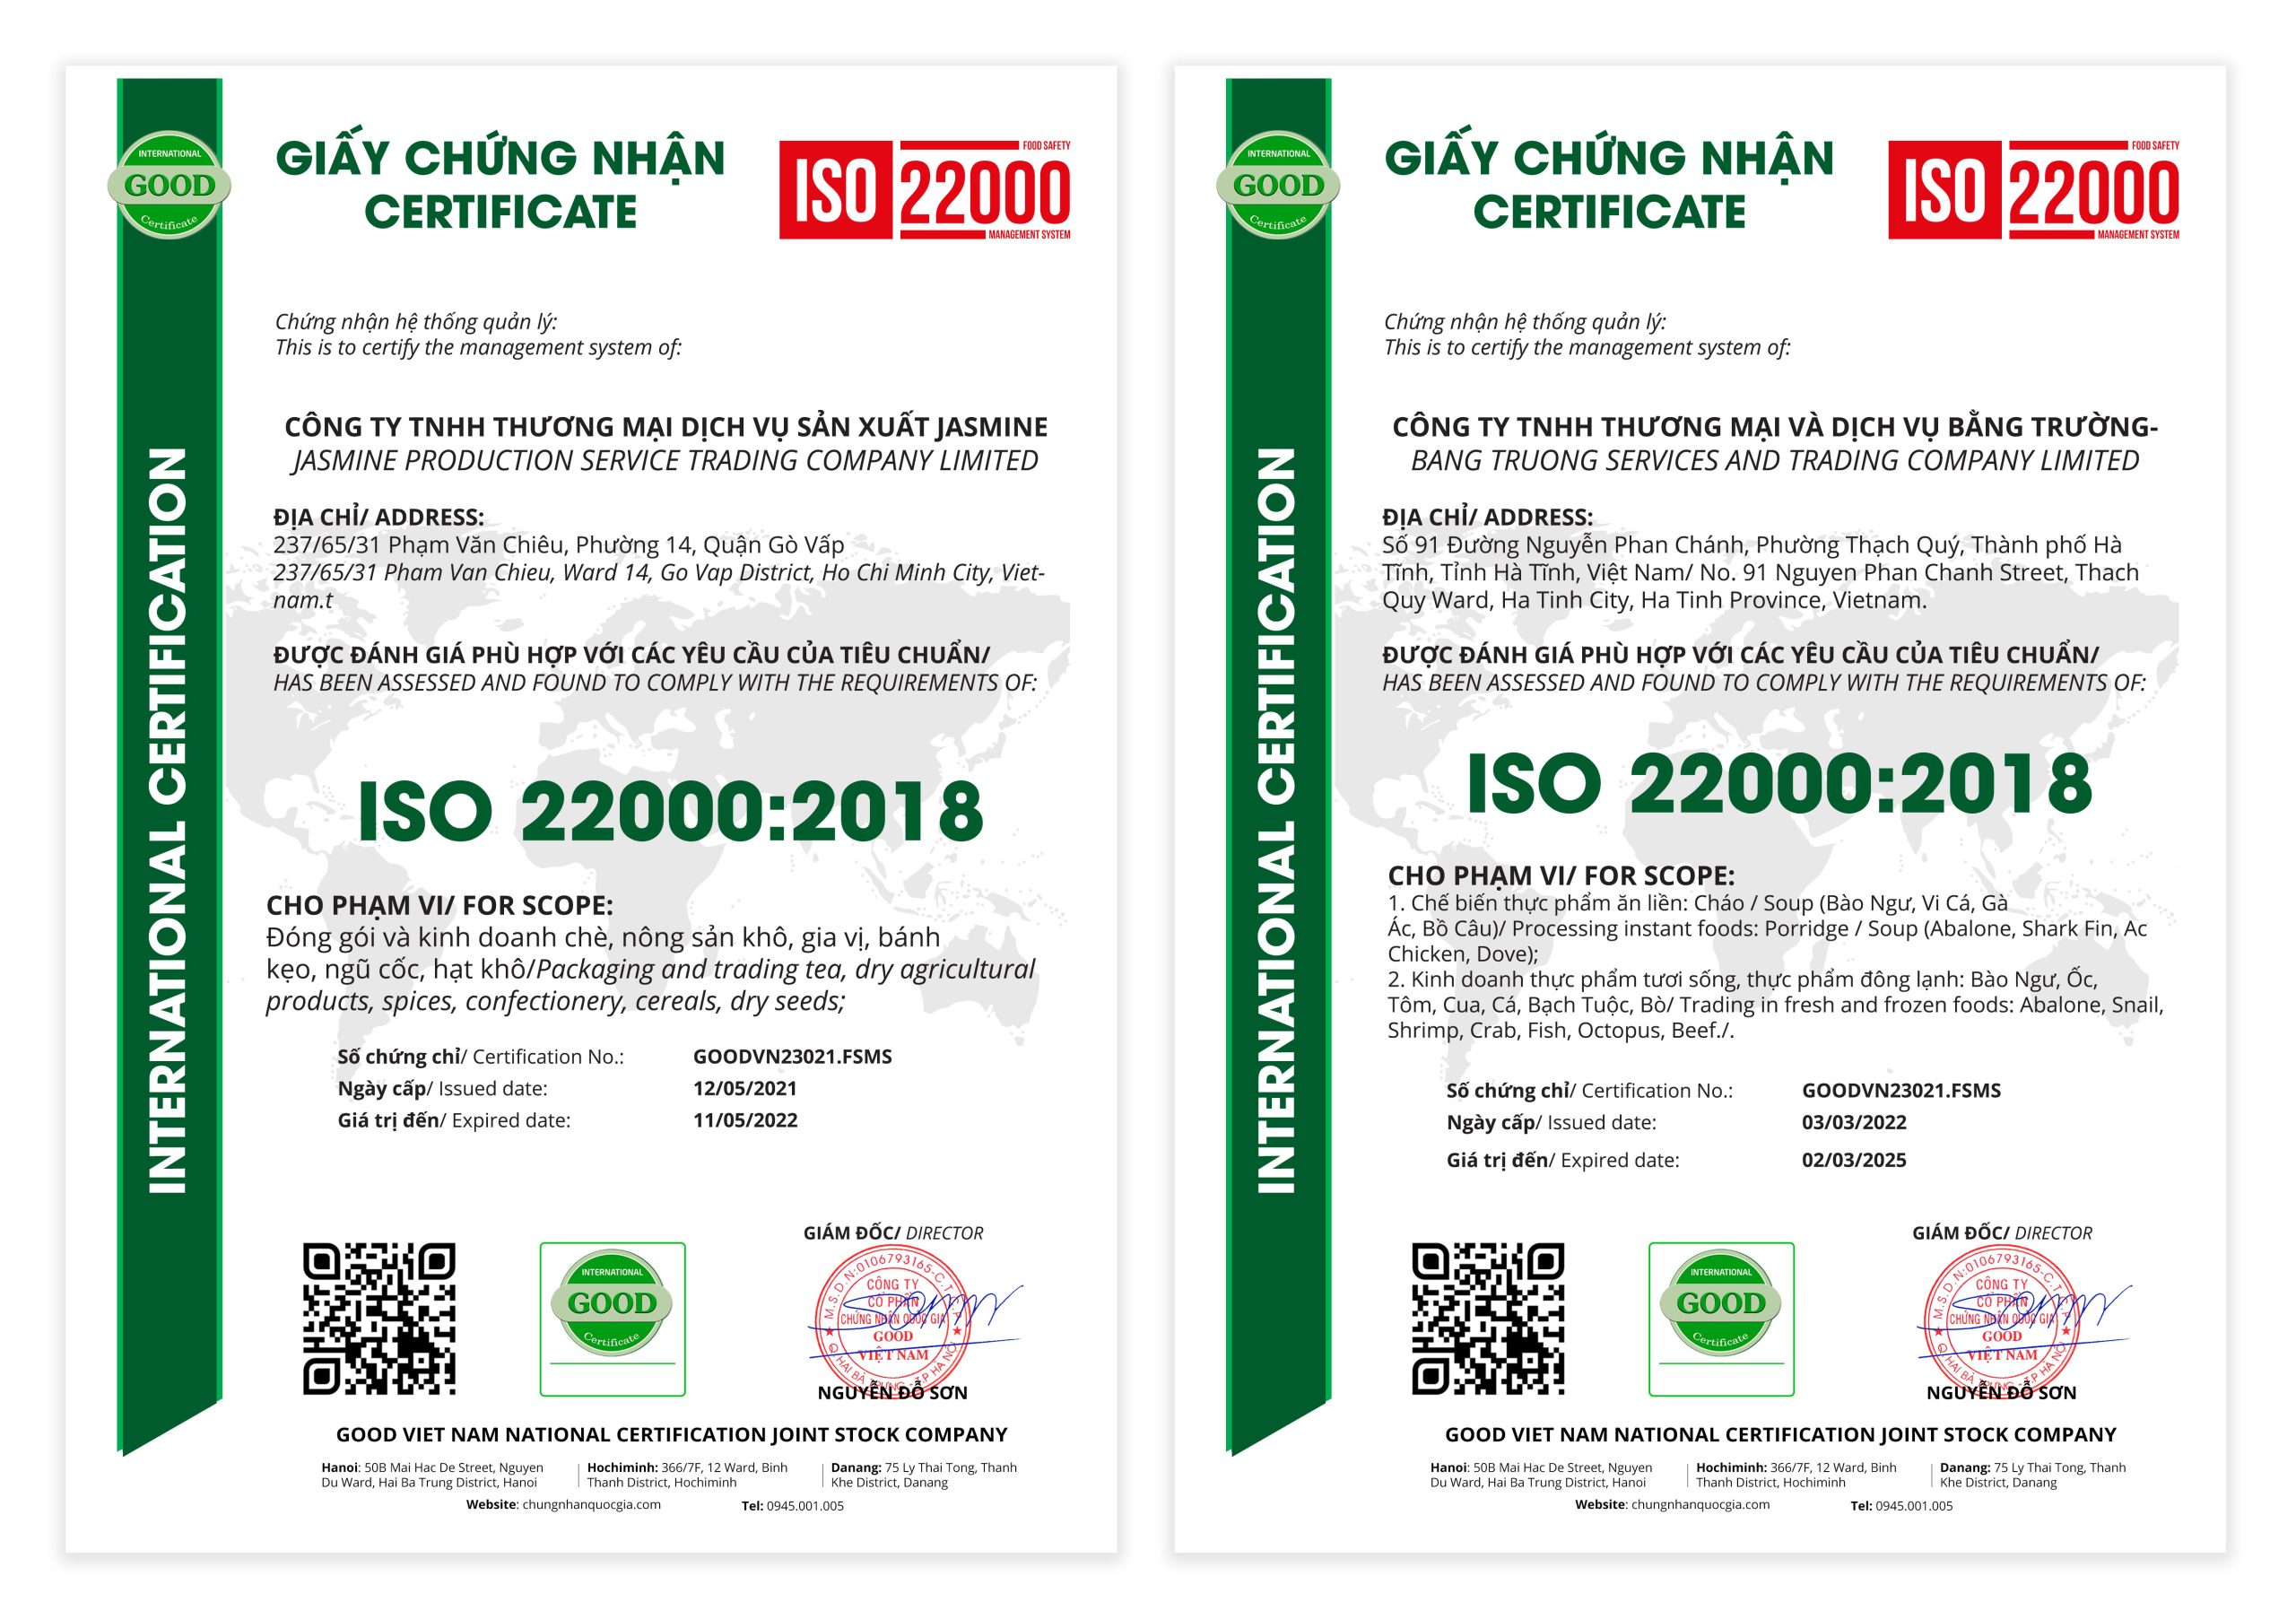 Chứng nhận ISO 22000 tại Goodvietnam